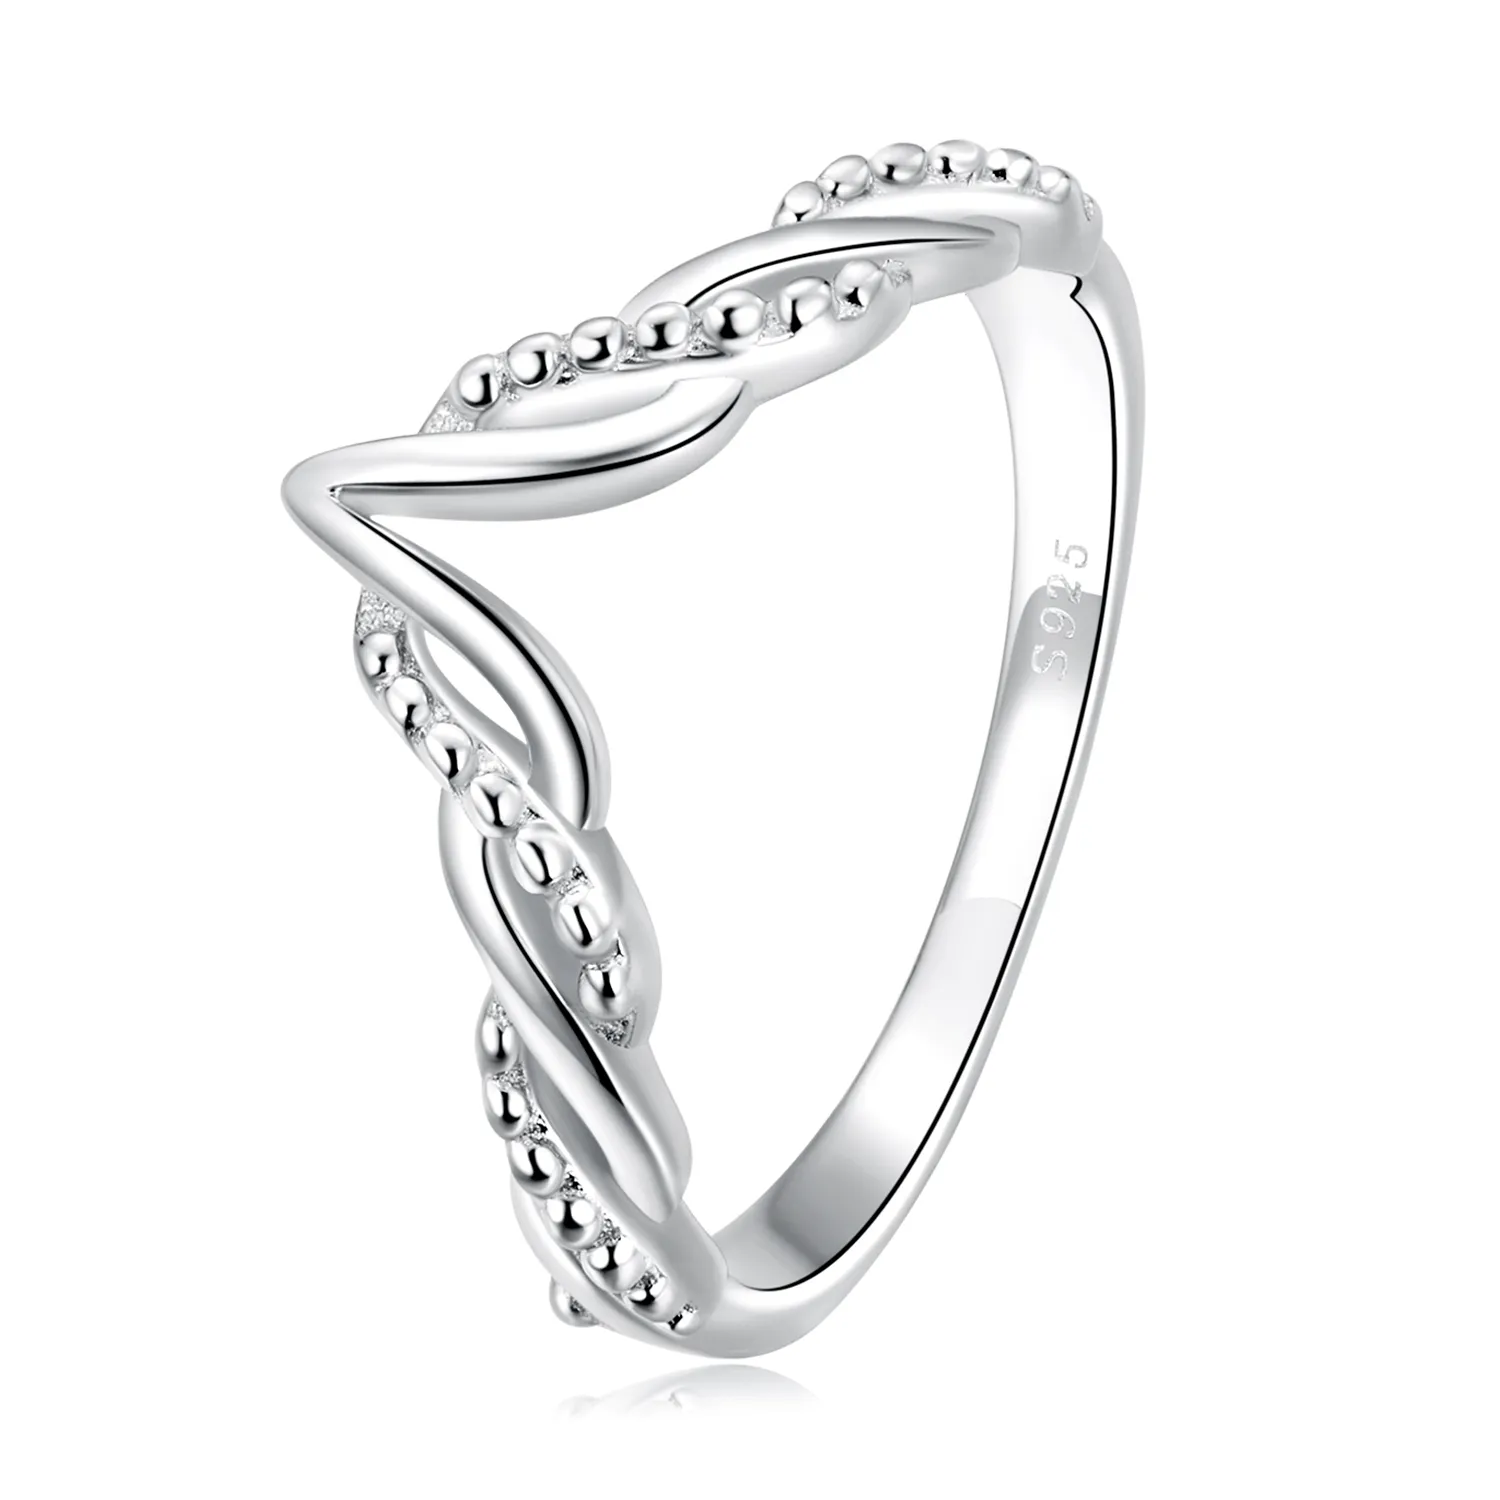 Inelul Tiara de stil Pandora cu formă de furcă - BSR258